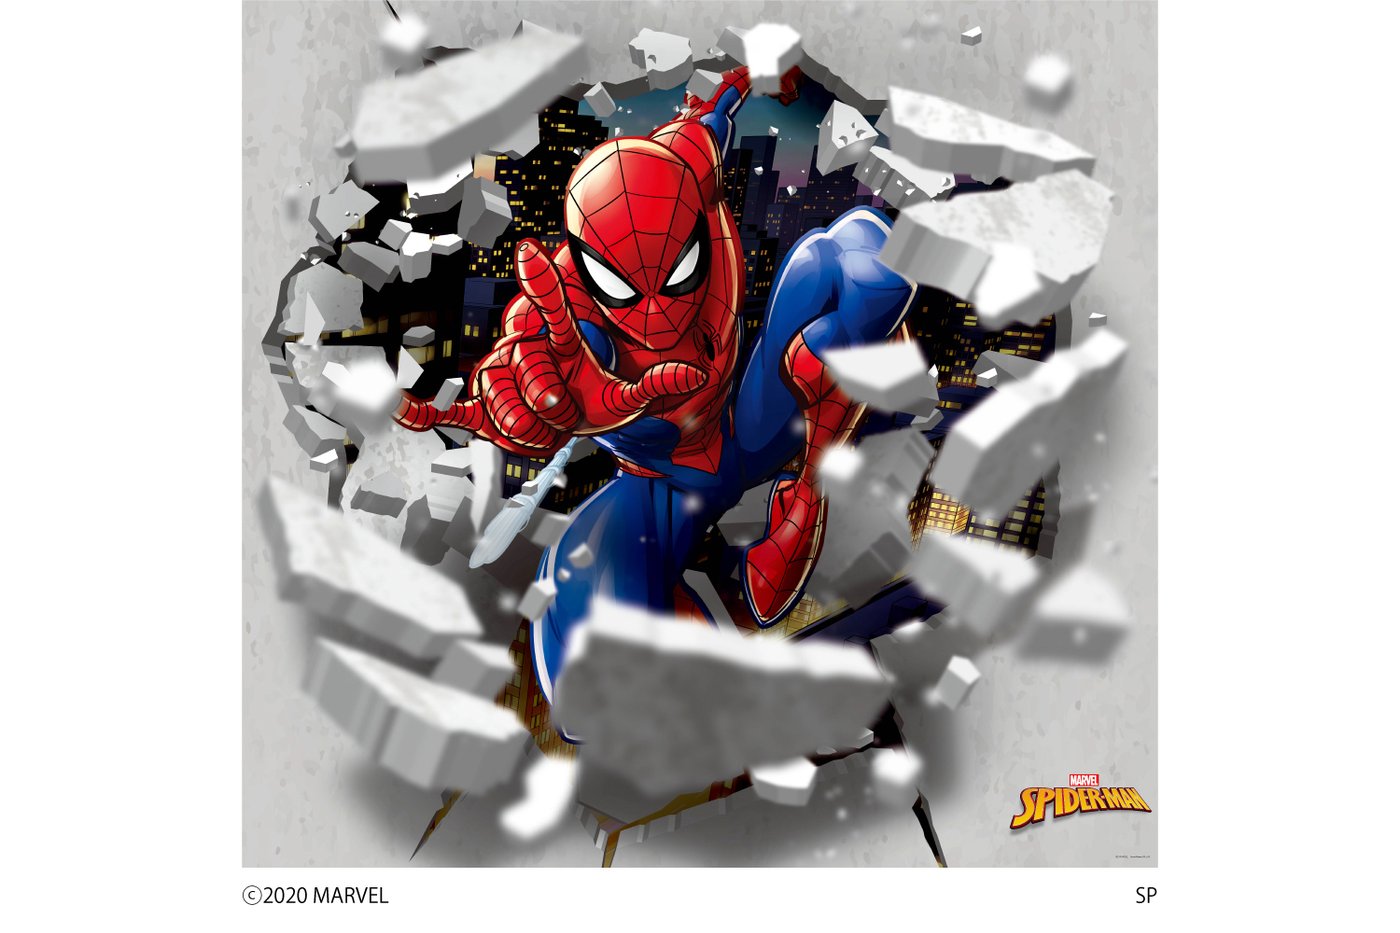 Marvel マーベル Spider Man 壁紙素材ウォールステッカー スパイダーマン 6シートタイプ スパイダーマン Wall Paper M031 6 プリテック Alittlepeaceofmind Co Uk